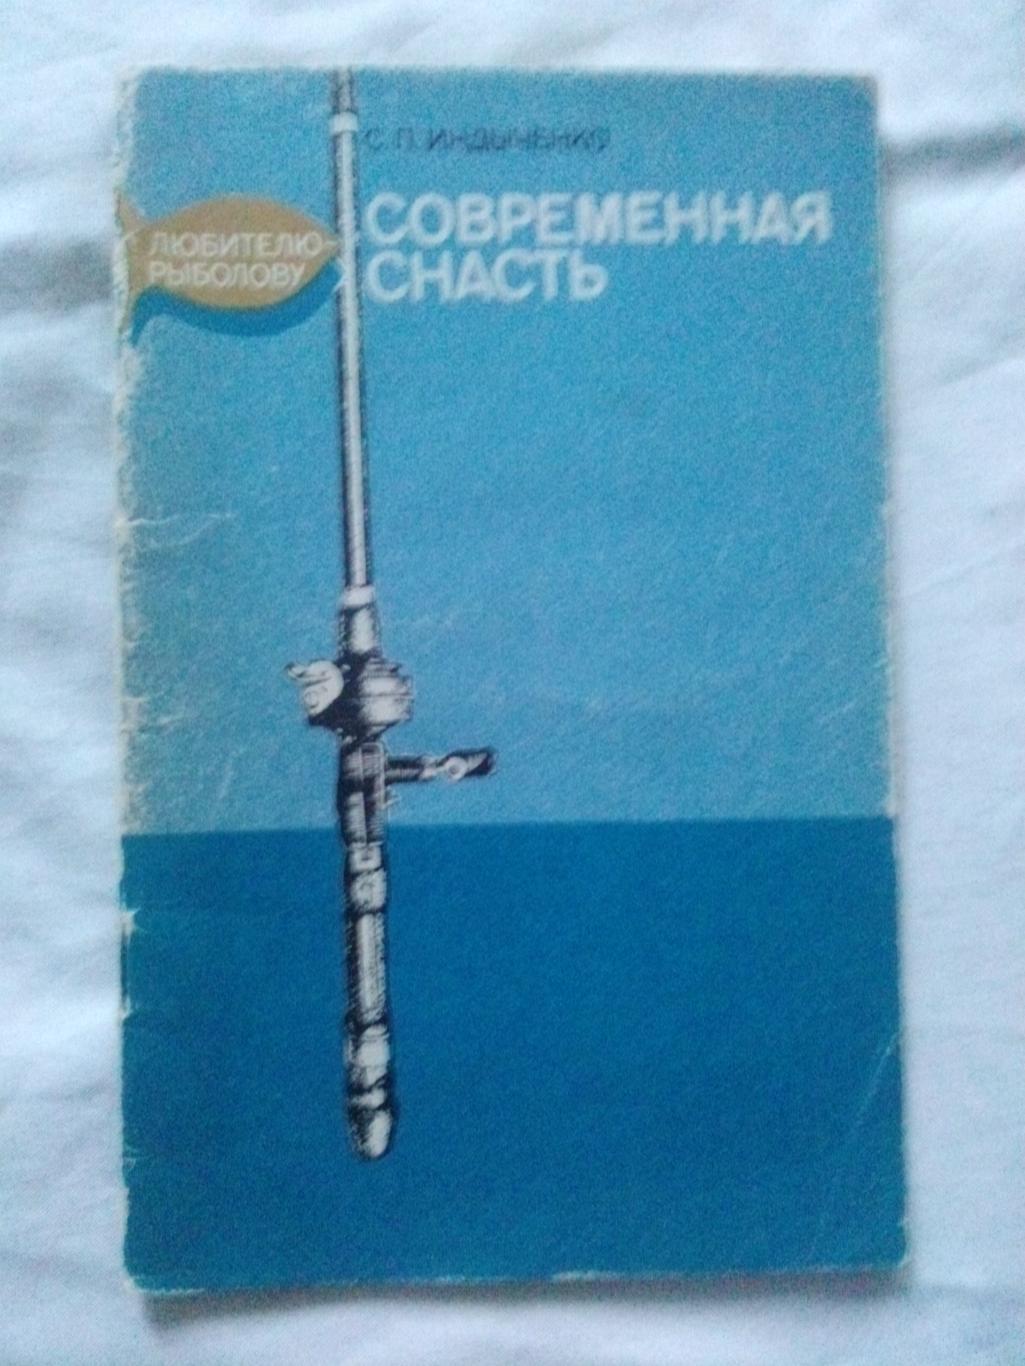 С.П. Индынченко -Современная снасть1980 г. (Рыбалка , рыболовство)